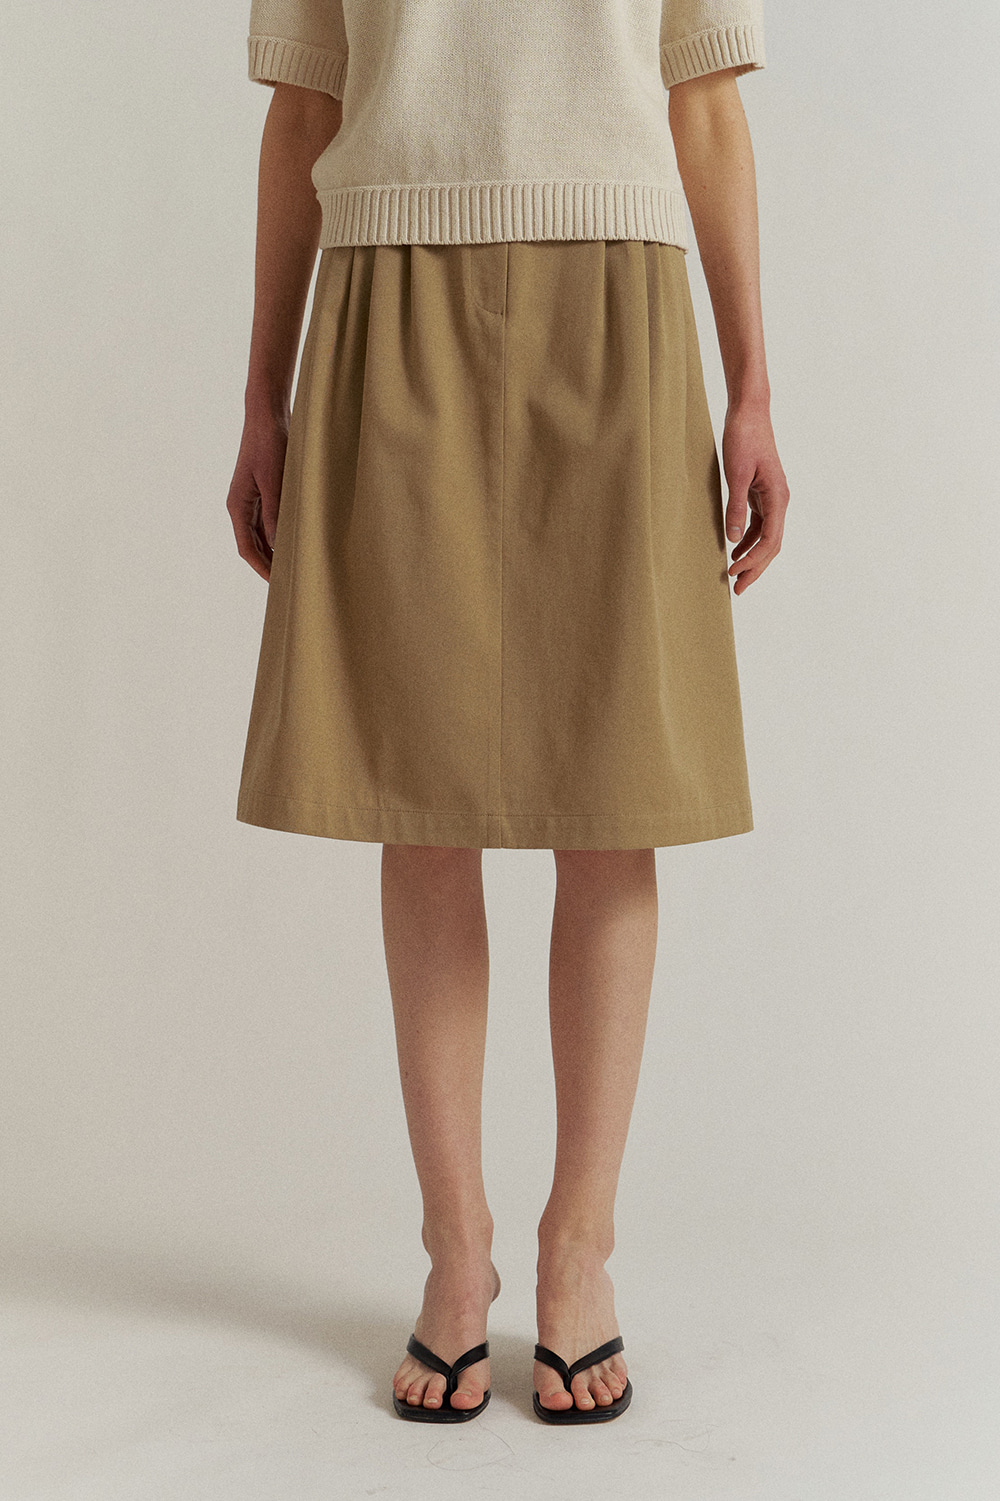 Suri Cotton Skirt in Cinnamon